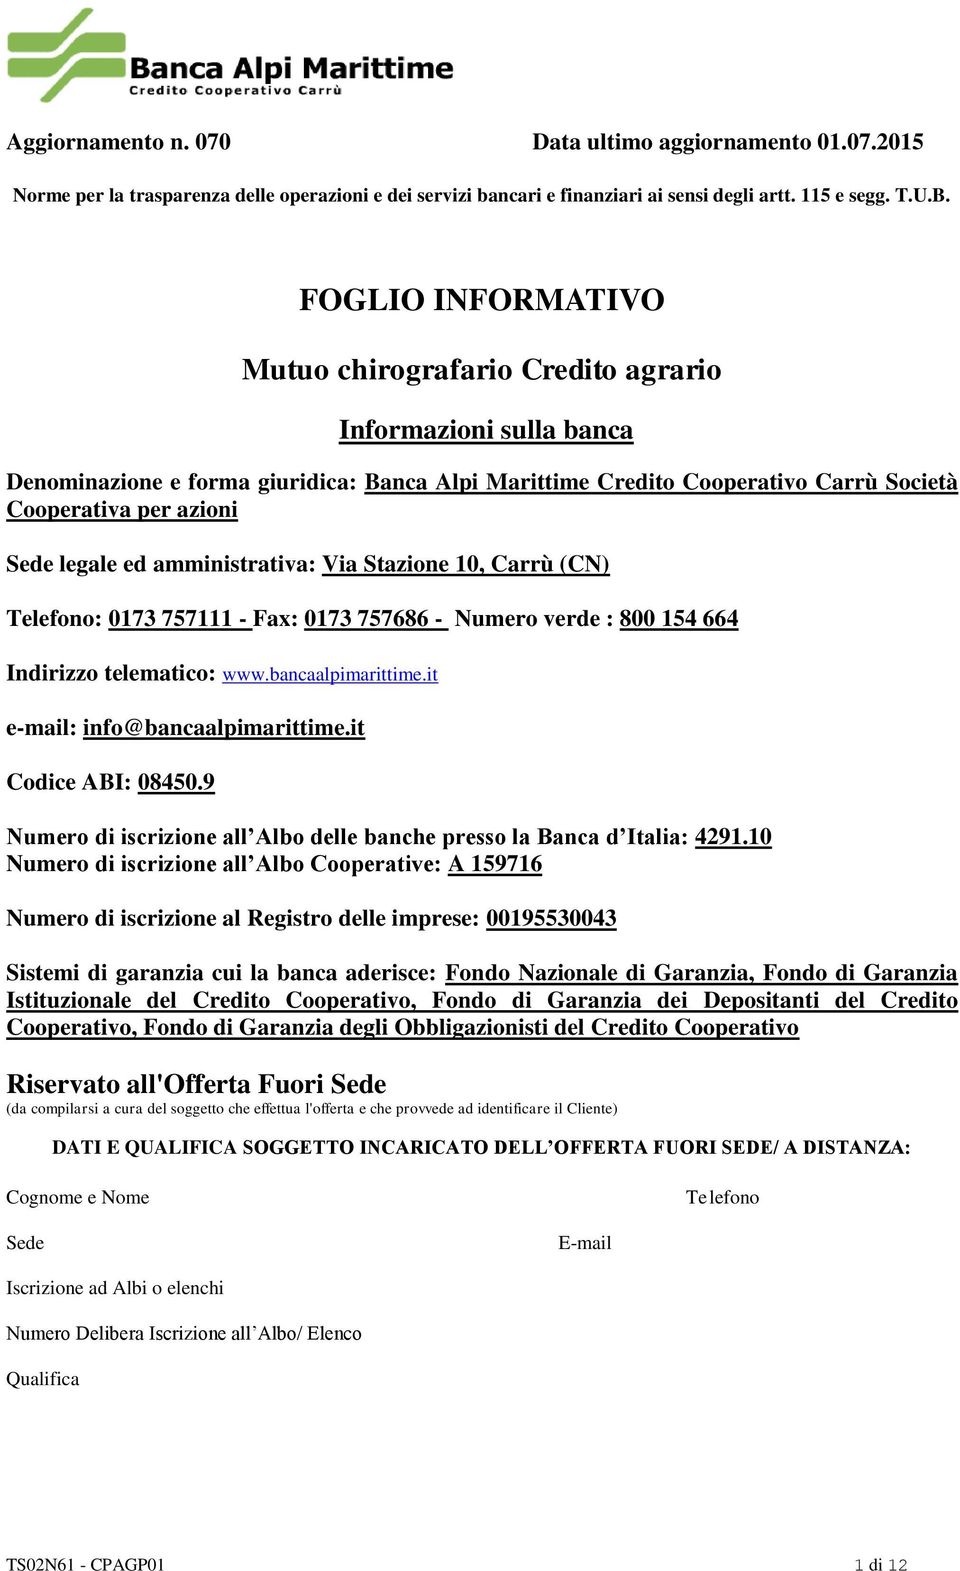 legale ed amministrativa: Via Stazione 10, Carrù (CN) Telefono: 0173 757111 - Fax: 0173 757686 - Numero verde : 800 154 664 Indirizzo telematico: www.bancaalpimarittime.